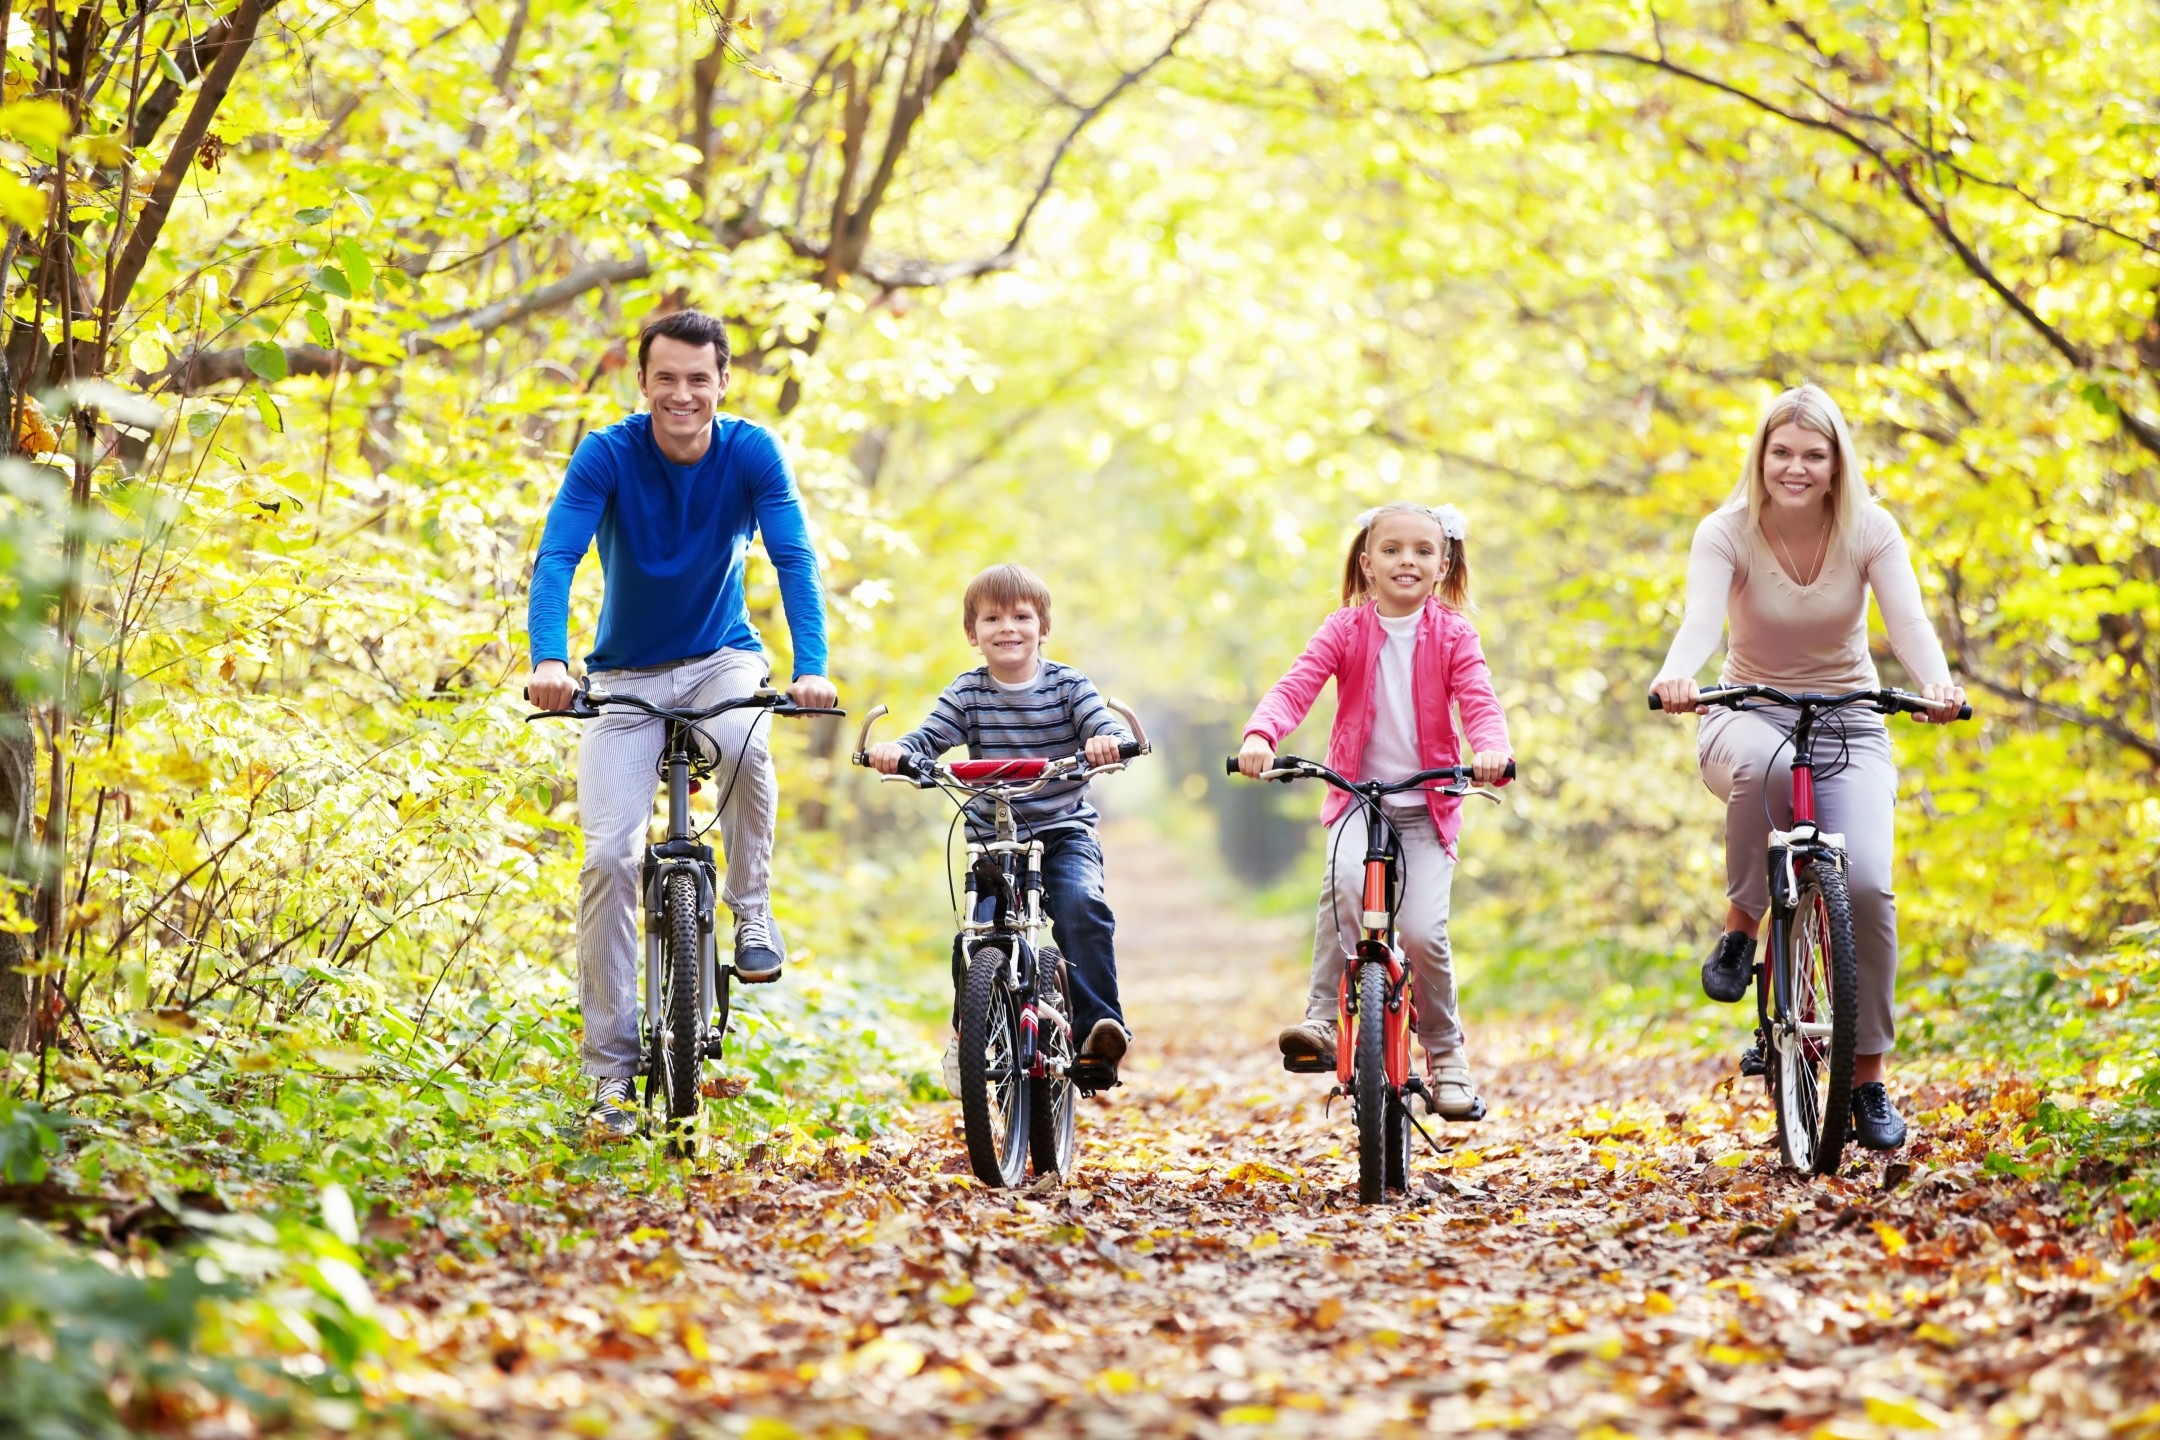 У растений активный образ жизни или нет. Семья на велосипедах. Семья на прогулке. Прогулка на природе. Активный образ жизни.